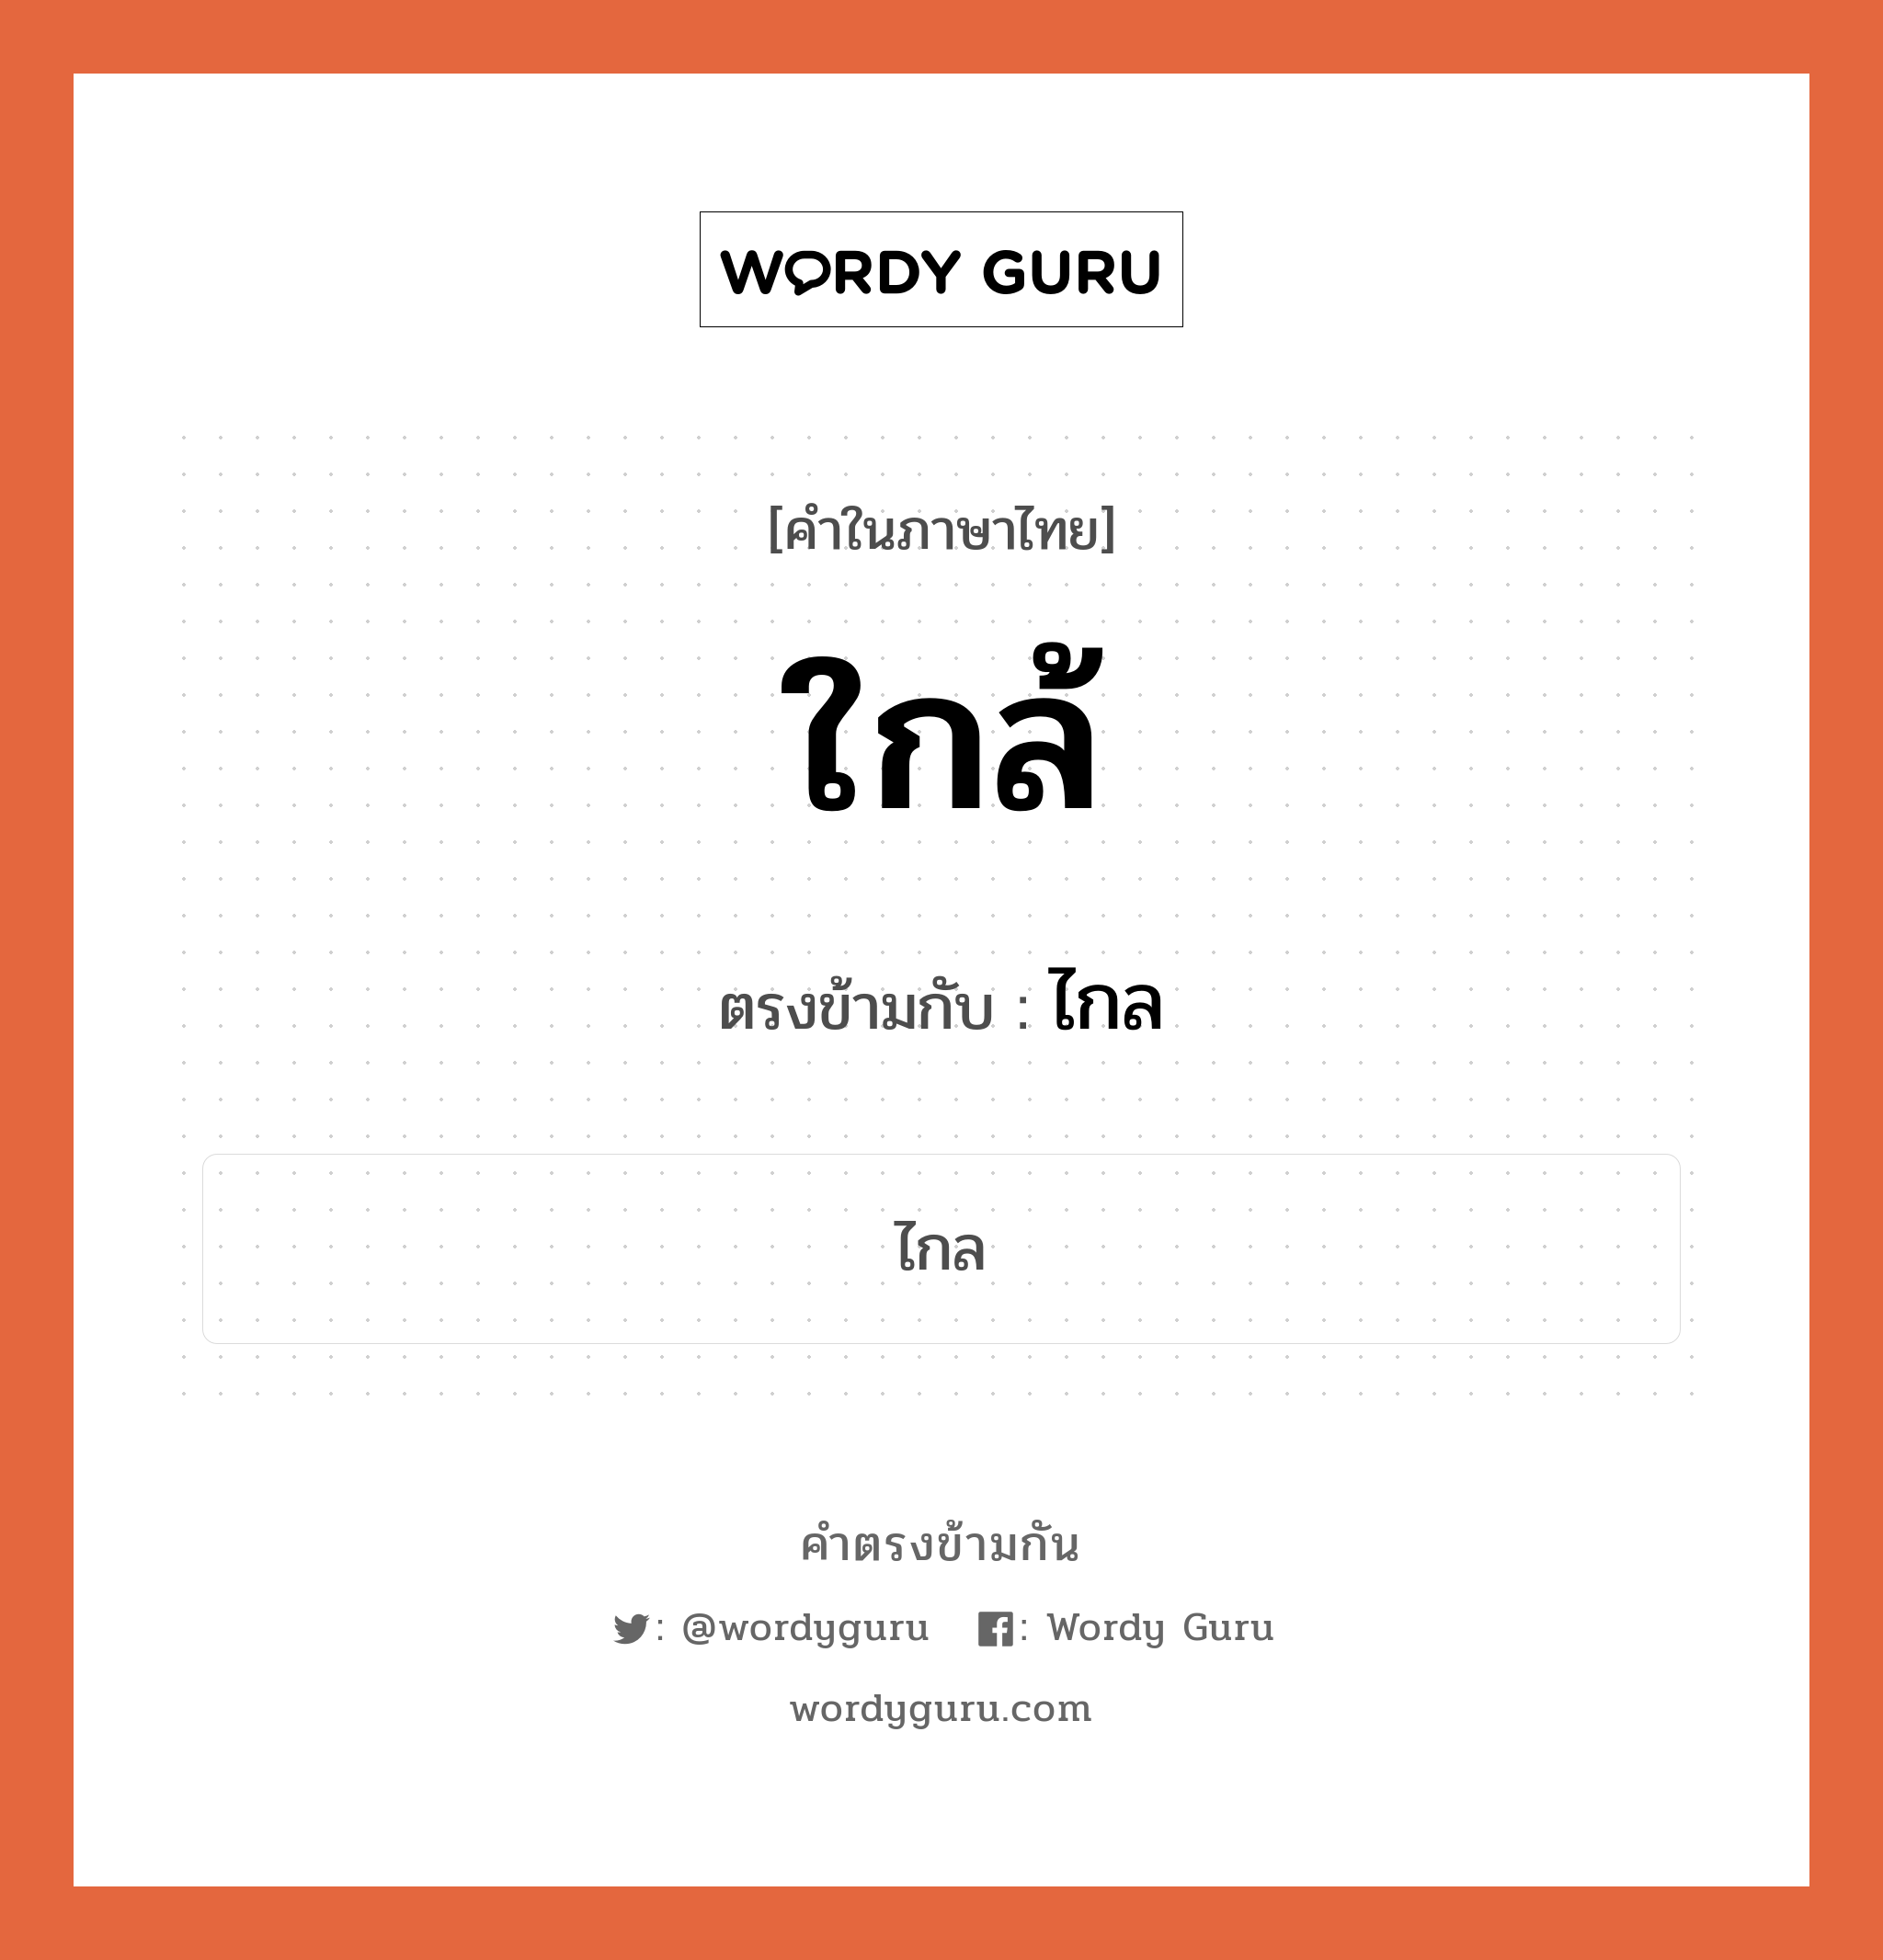 ใกล้ เป็นคำตรงข้ามกับคำไหนบ้าง? เป็นหนึ่งในคำตรงข้ามของ ไกล, คำในภาษาไทย ใกล้ ตรงข้ามกับ ไกล หมวด ไกล